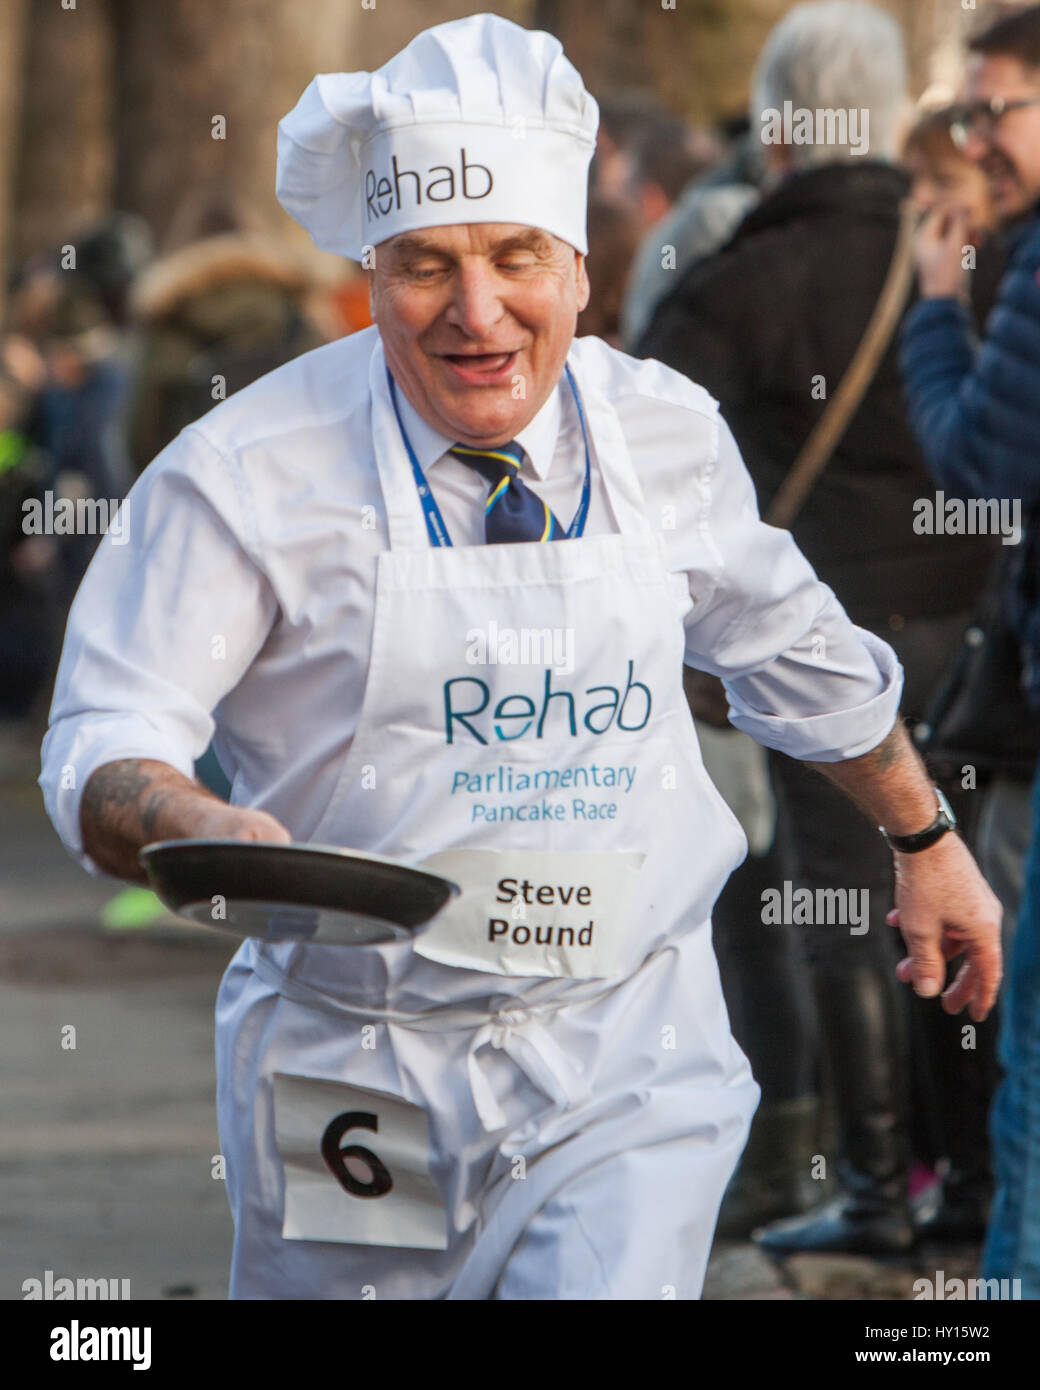 Pancake carrera parlamentaria en ayuda de caridad Rehab, Victoria Park Featuring: Steve Pound MP donde: Londres, Reino Unido cuando: 28 Feb 2017 Foto de stock